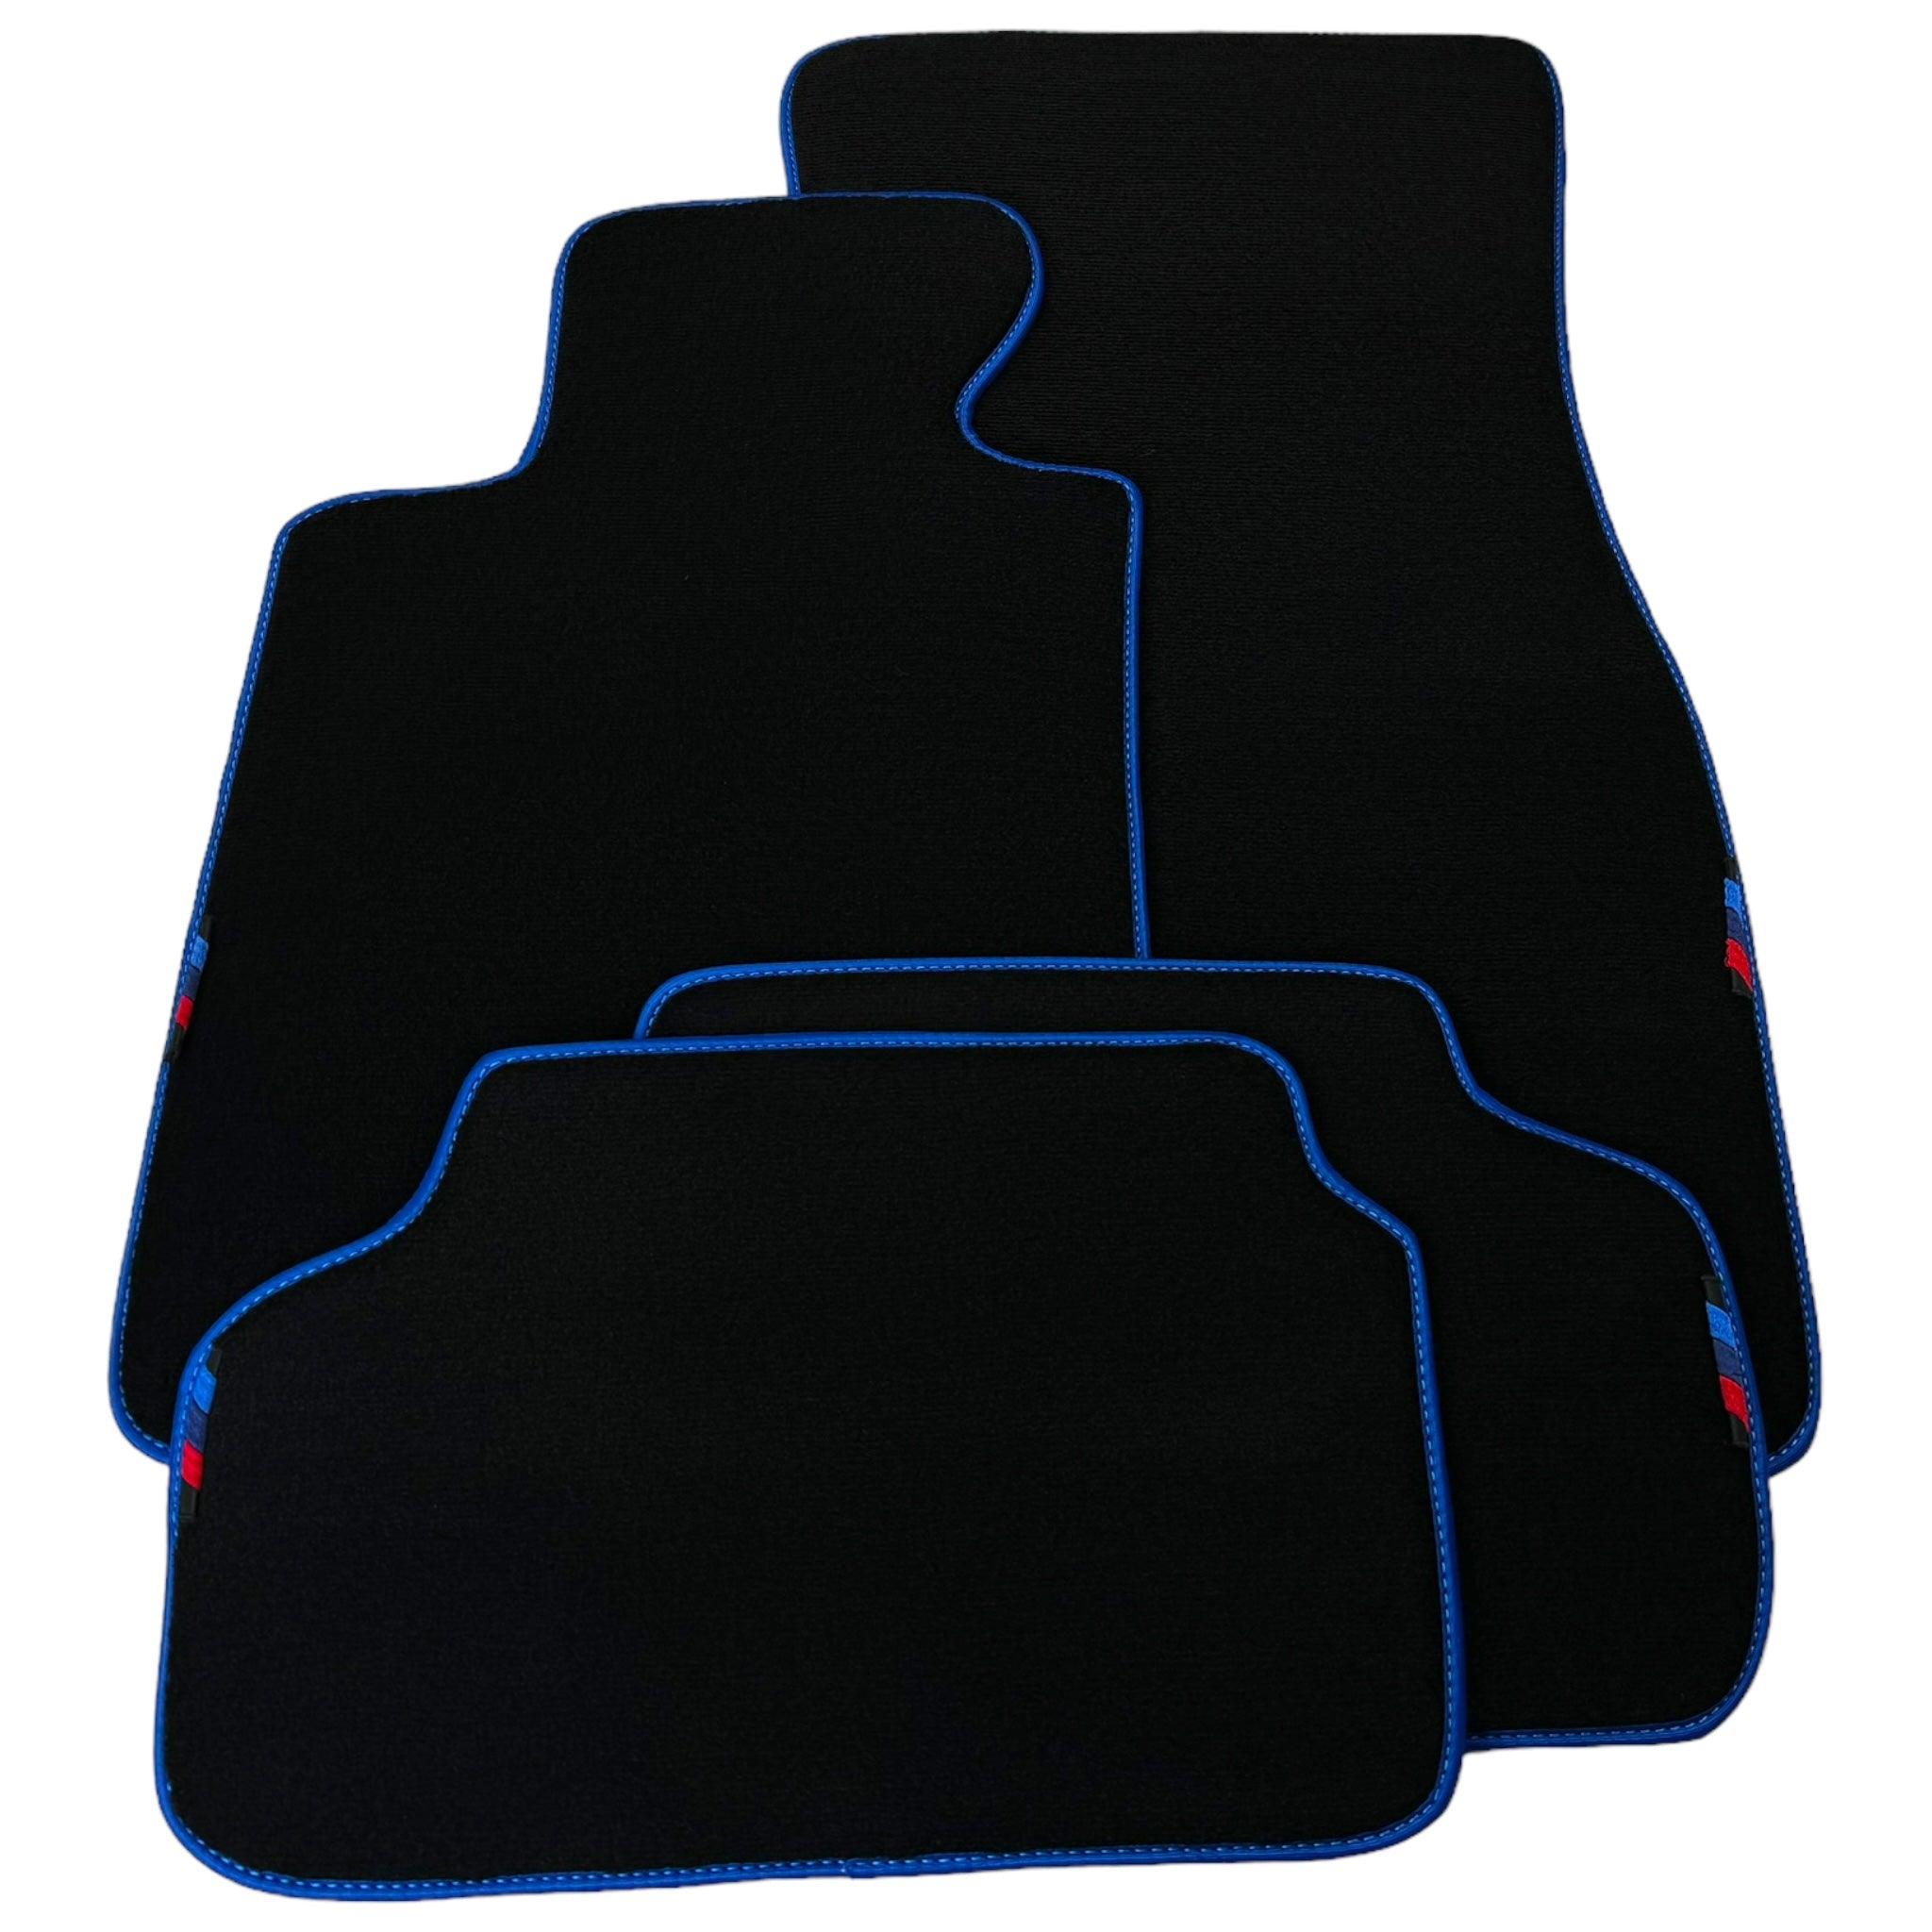 Black Floor Mats For BMW 6 Series F13 2-door Coupe | Blue Trim